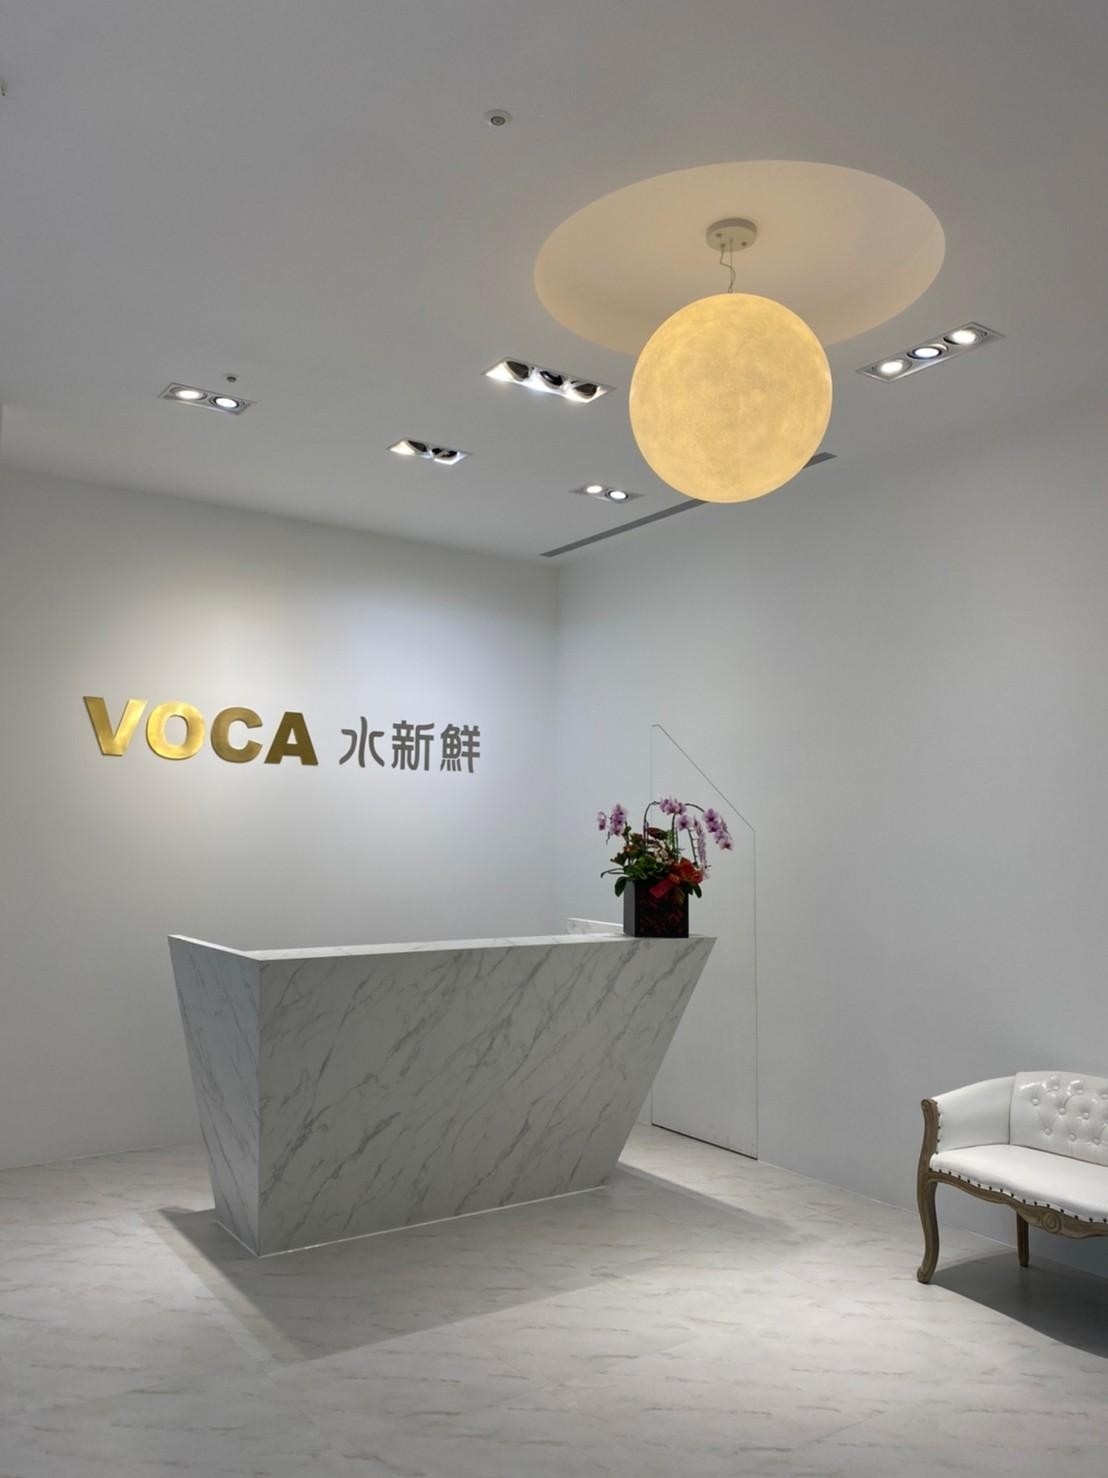 【台中商業空間設計】商業空間規劃設計-VOCA飲水界精英品牌